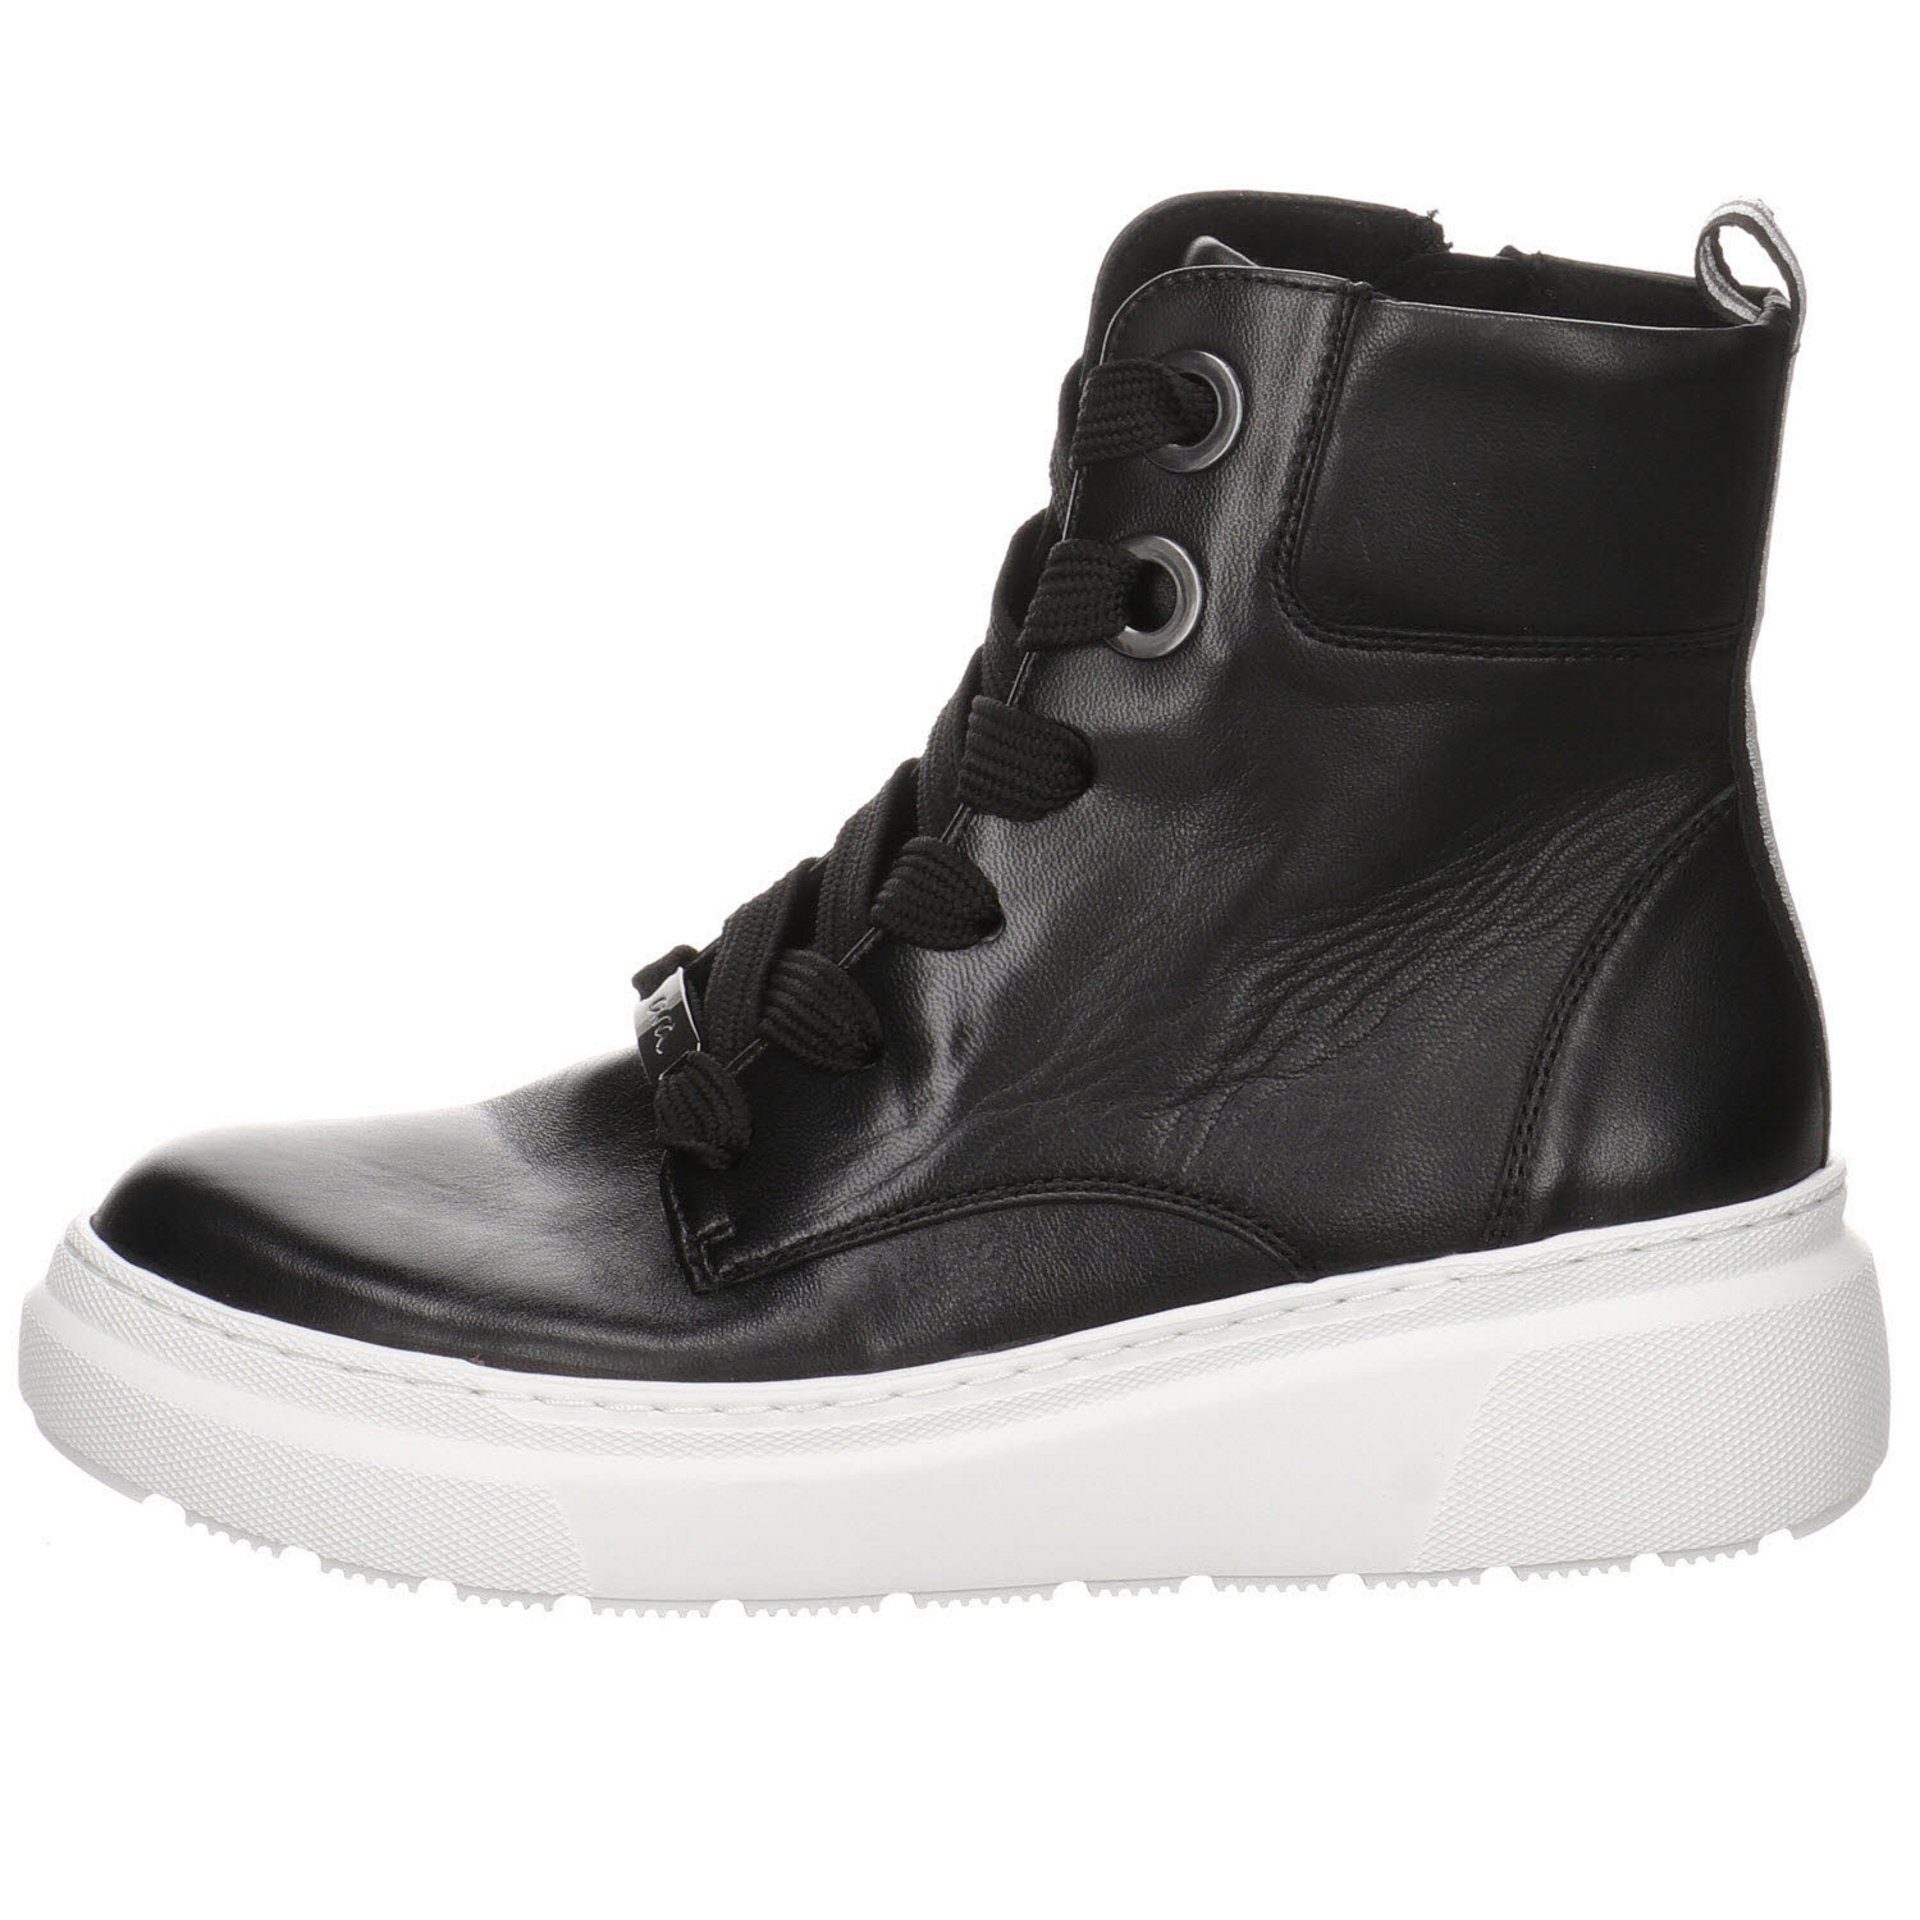 Lausanne-Highsoft Schnürstiefelette Stiefeletten dunkel Textil Schuhe schwarz Ara Damen